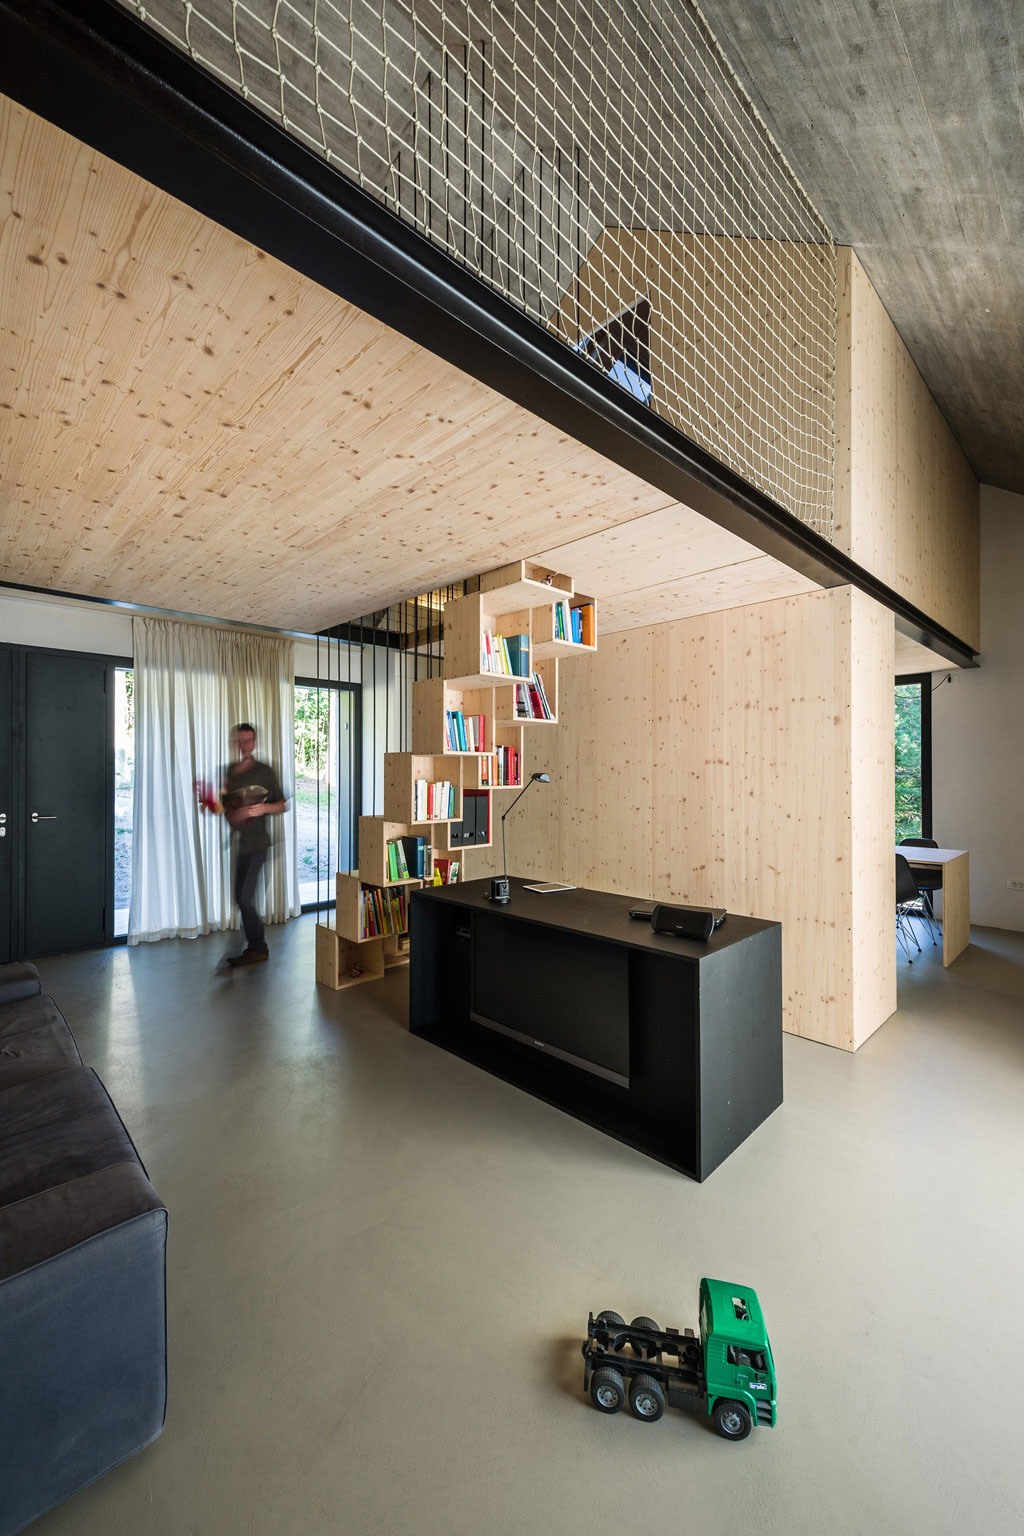 V "betónovom obale" je umiestnená drevená konštrukcia, ktorá strategicky rozdeľuje priestor interiéru a farebne kontrastuje s chladným výzorom fasády.